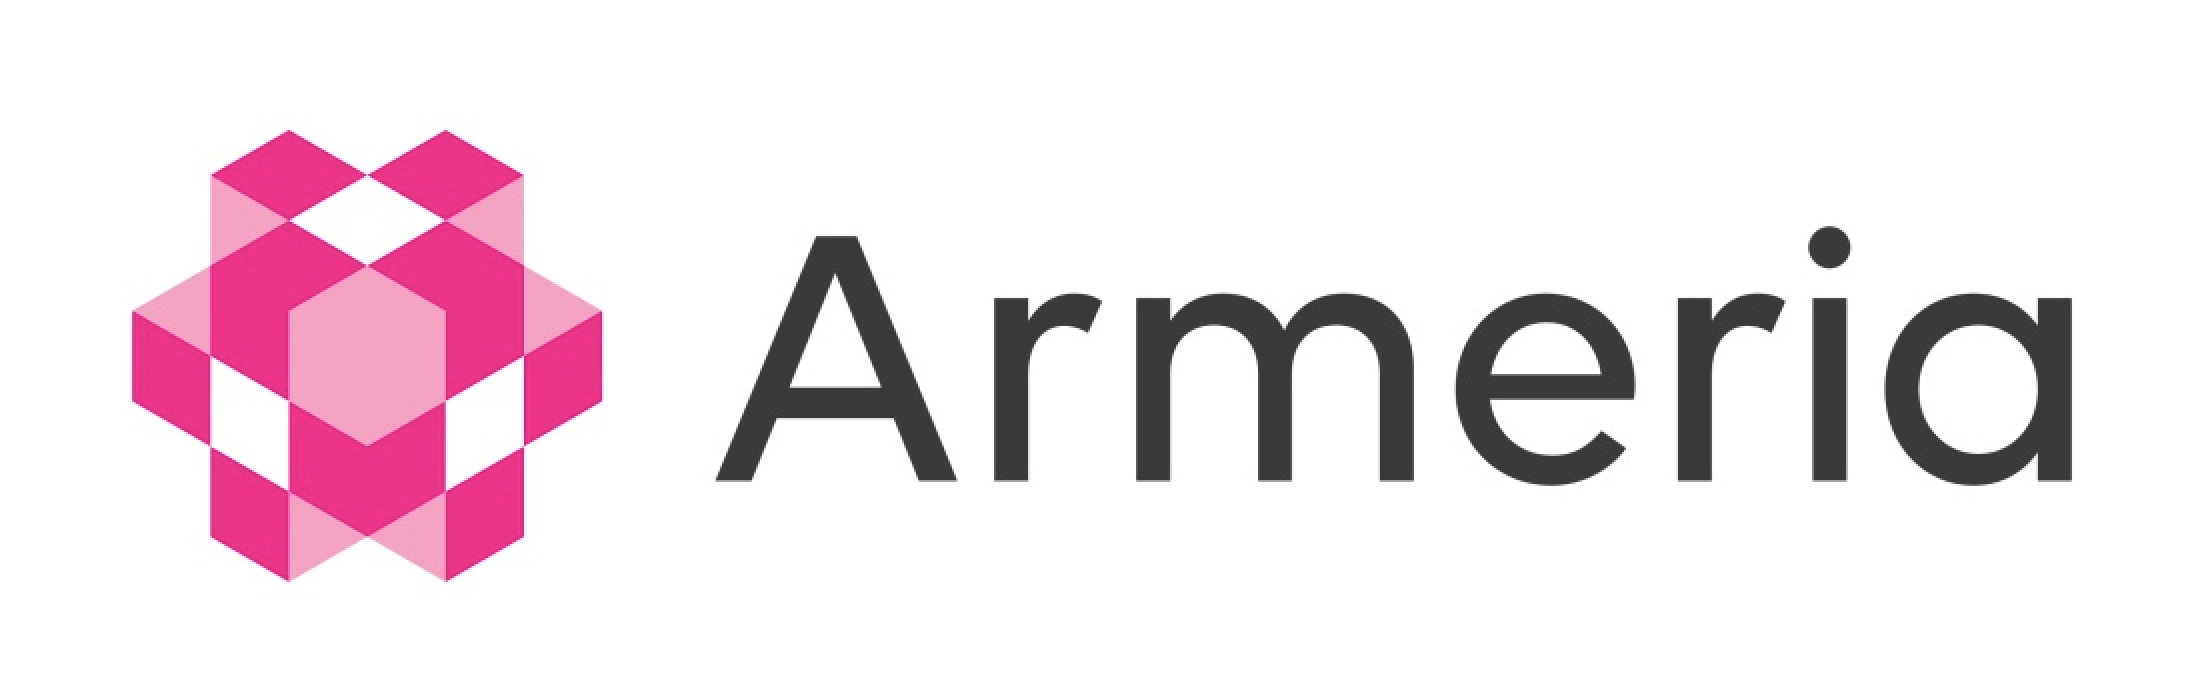 alt armeria_logo